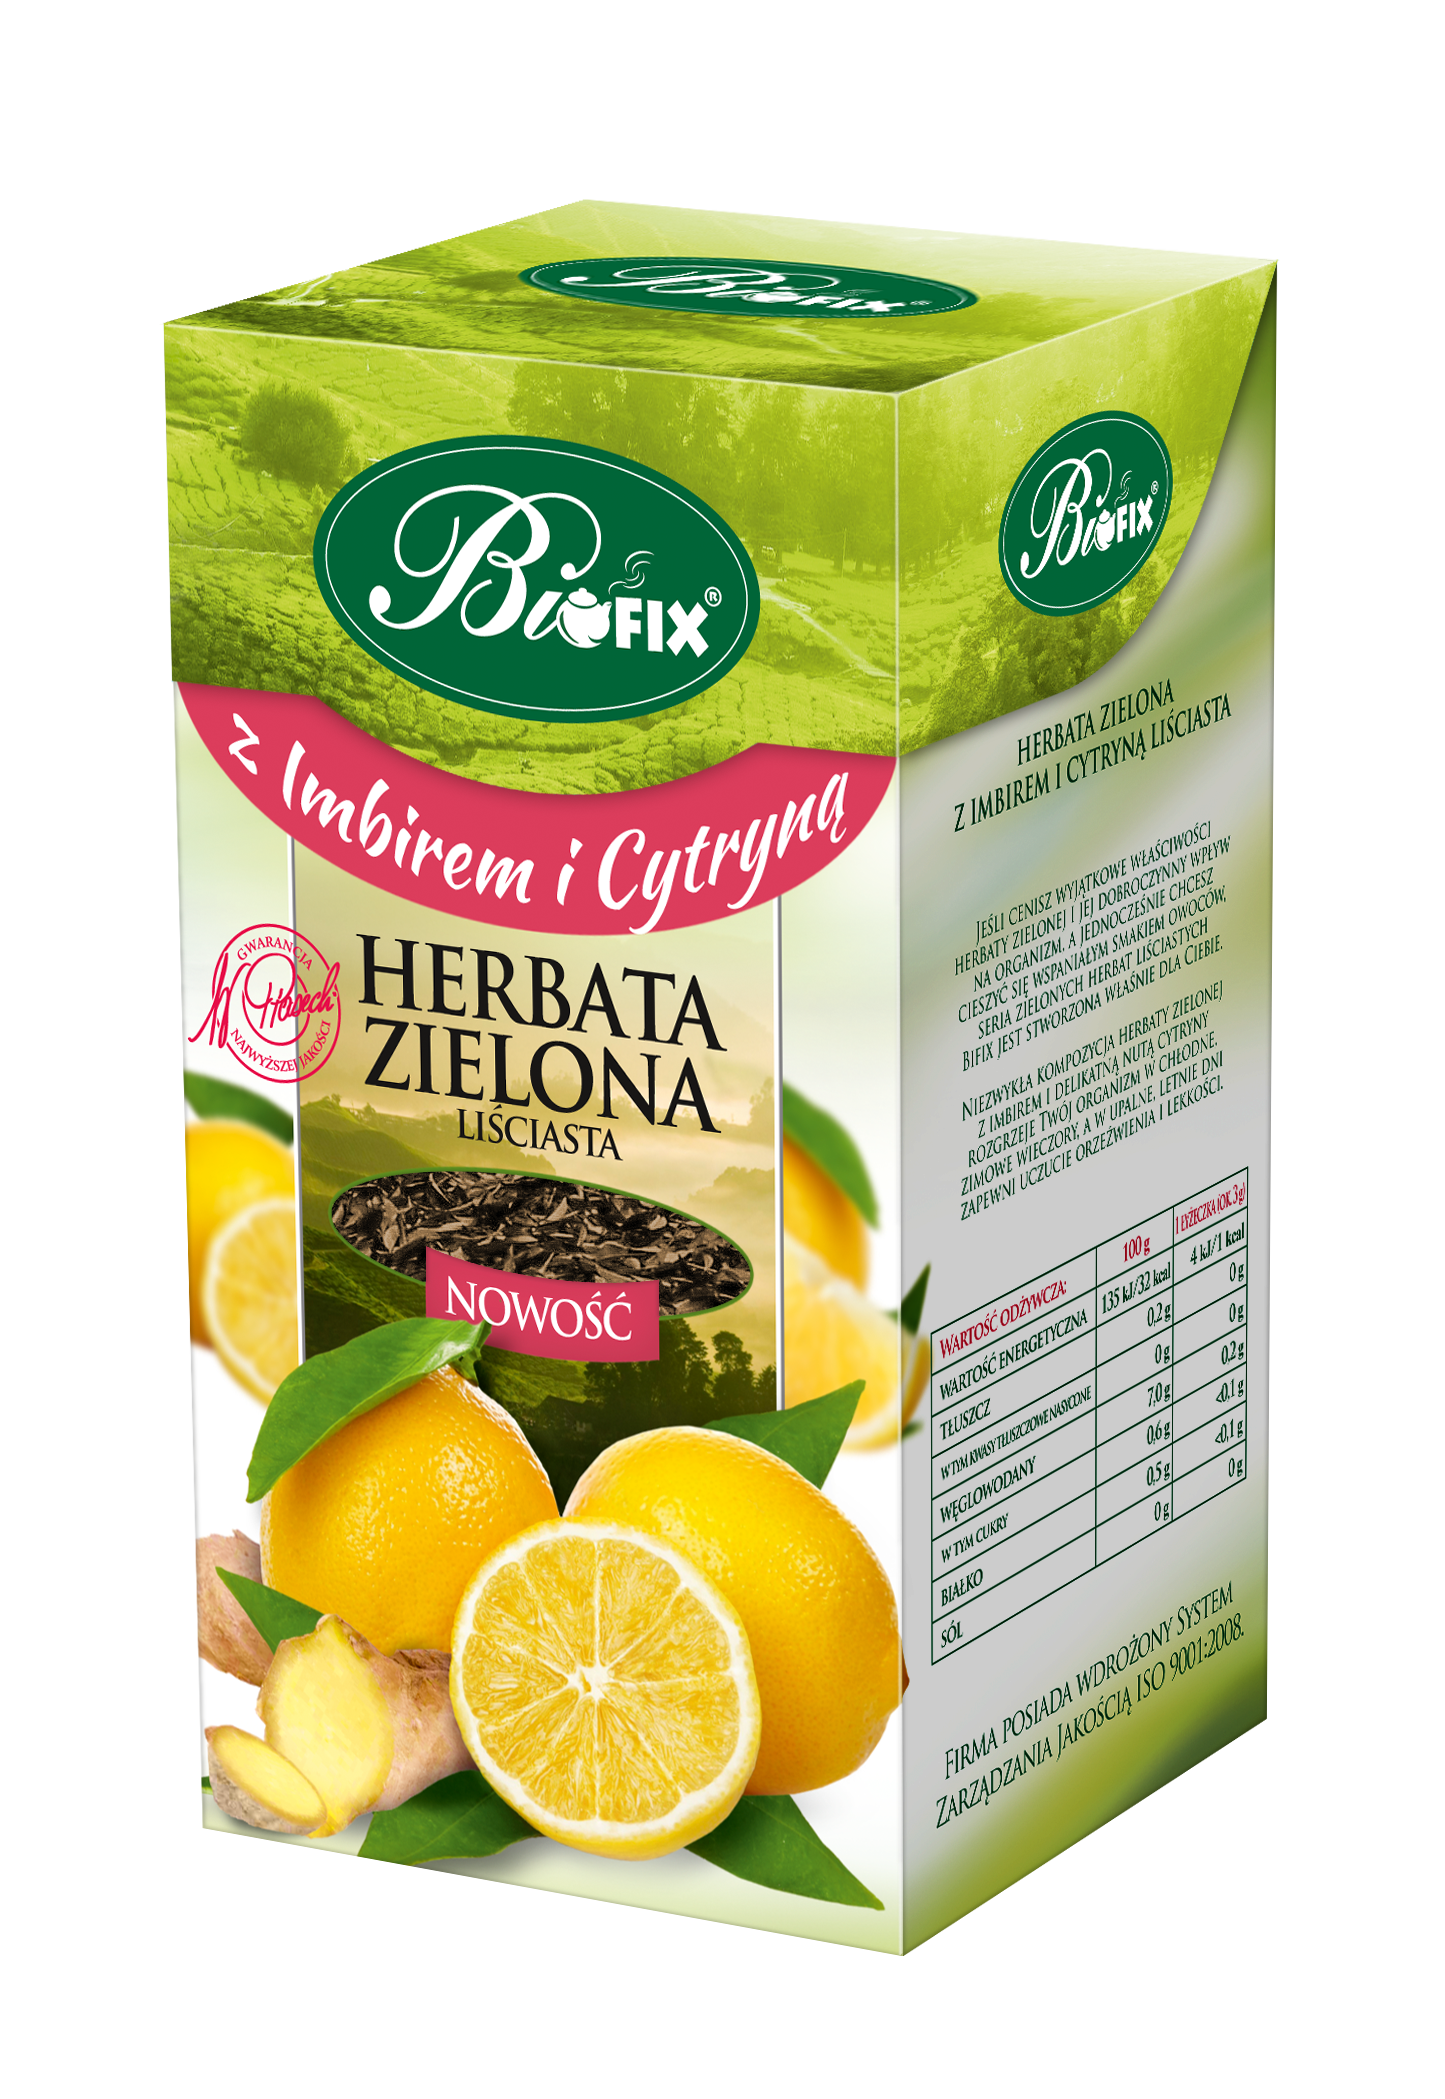 BiFIX herbata zielona z imbirem i cytryną